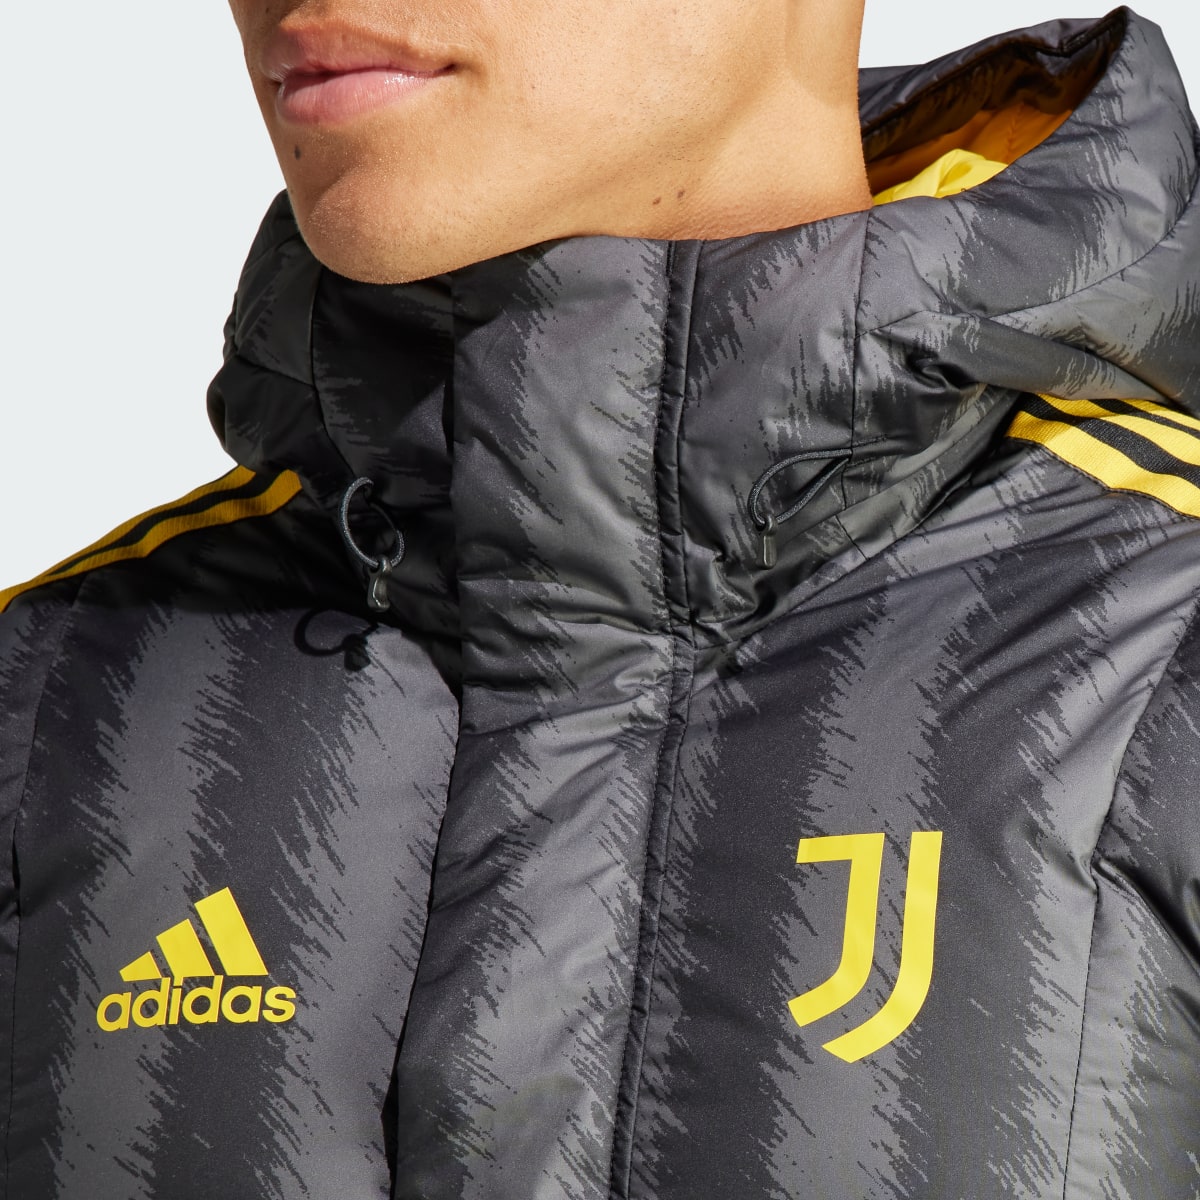 Adidas Juventus Turin DNA Daunenmantel. 6